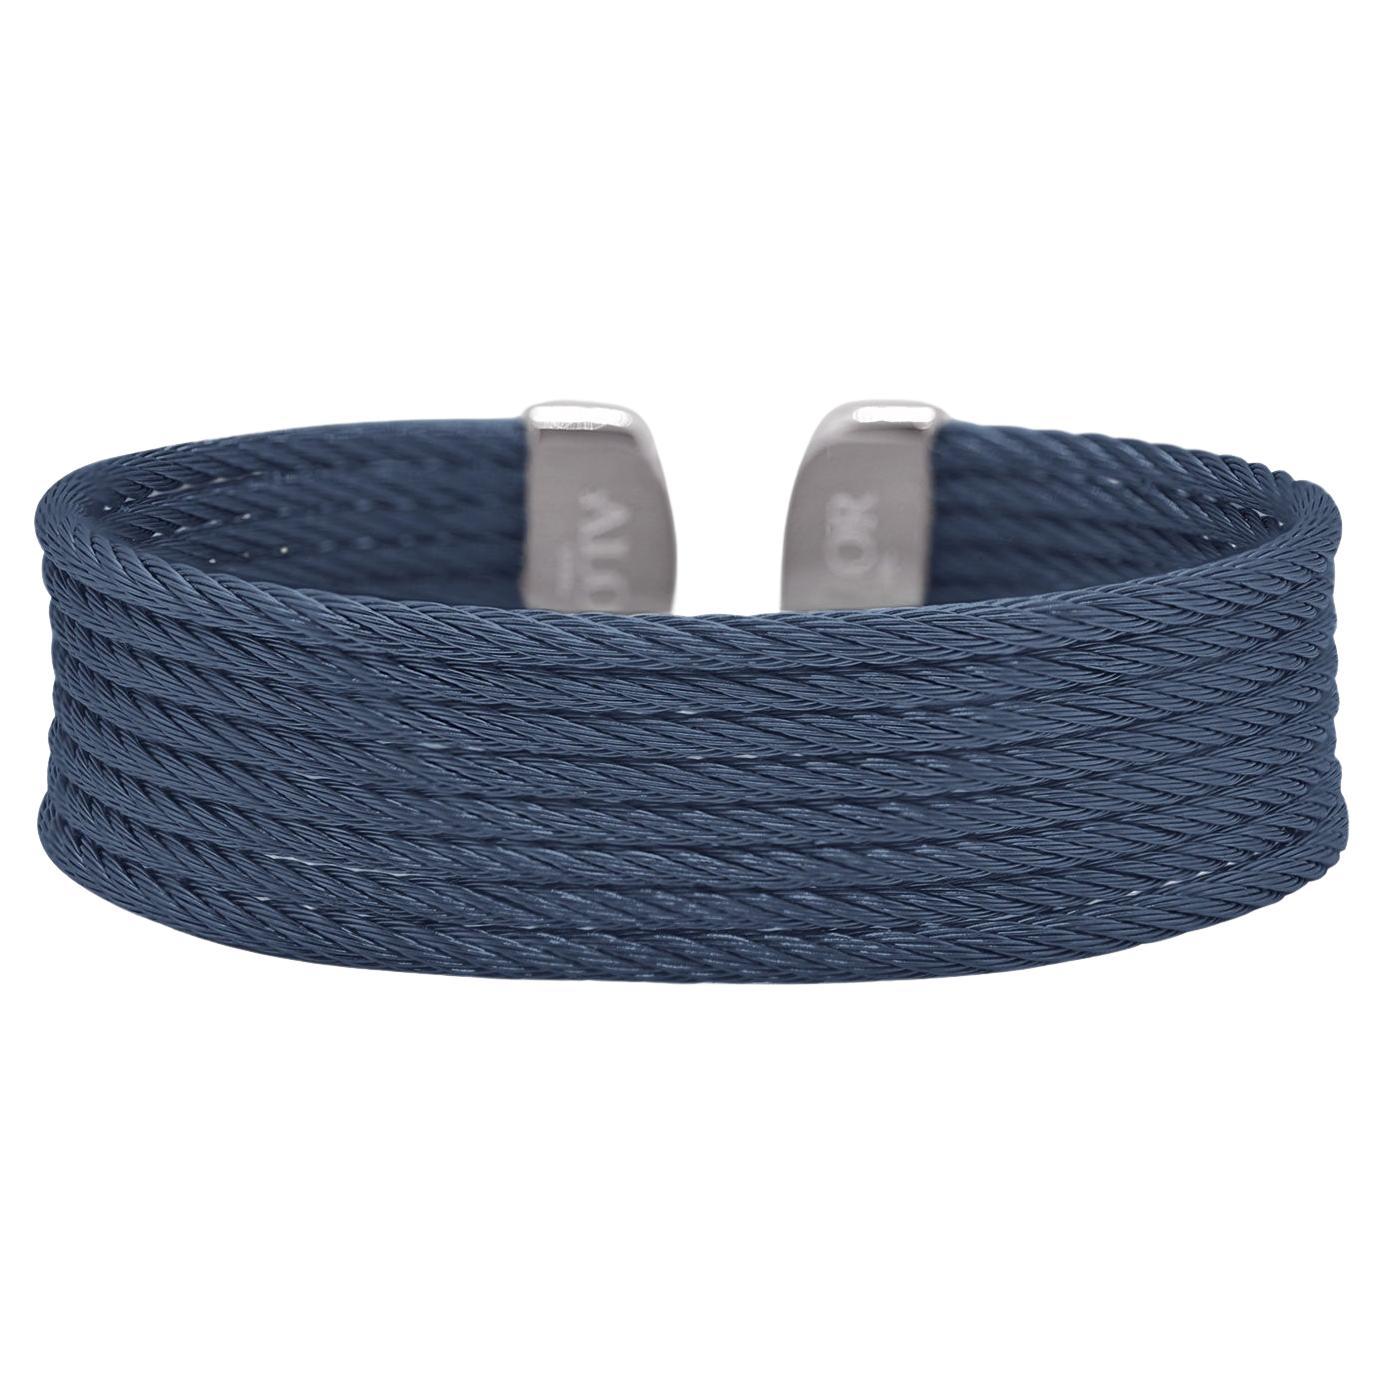 Alor Blauberry Cable Cuff Essentials 8-reihige Manschette 04-28-B608-00